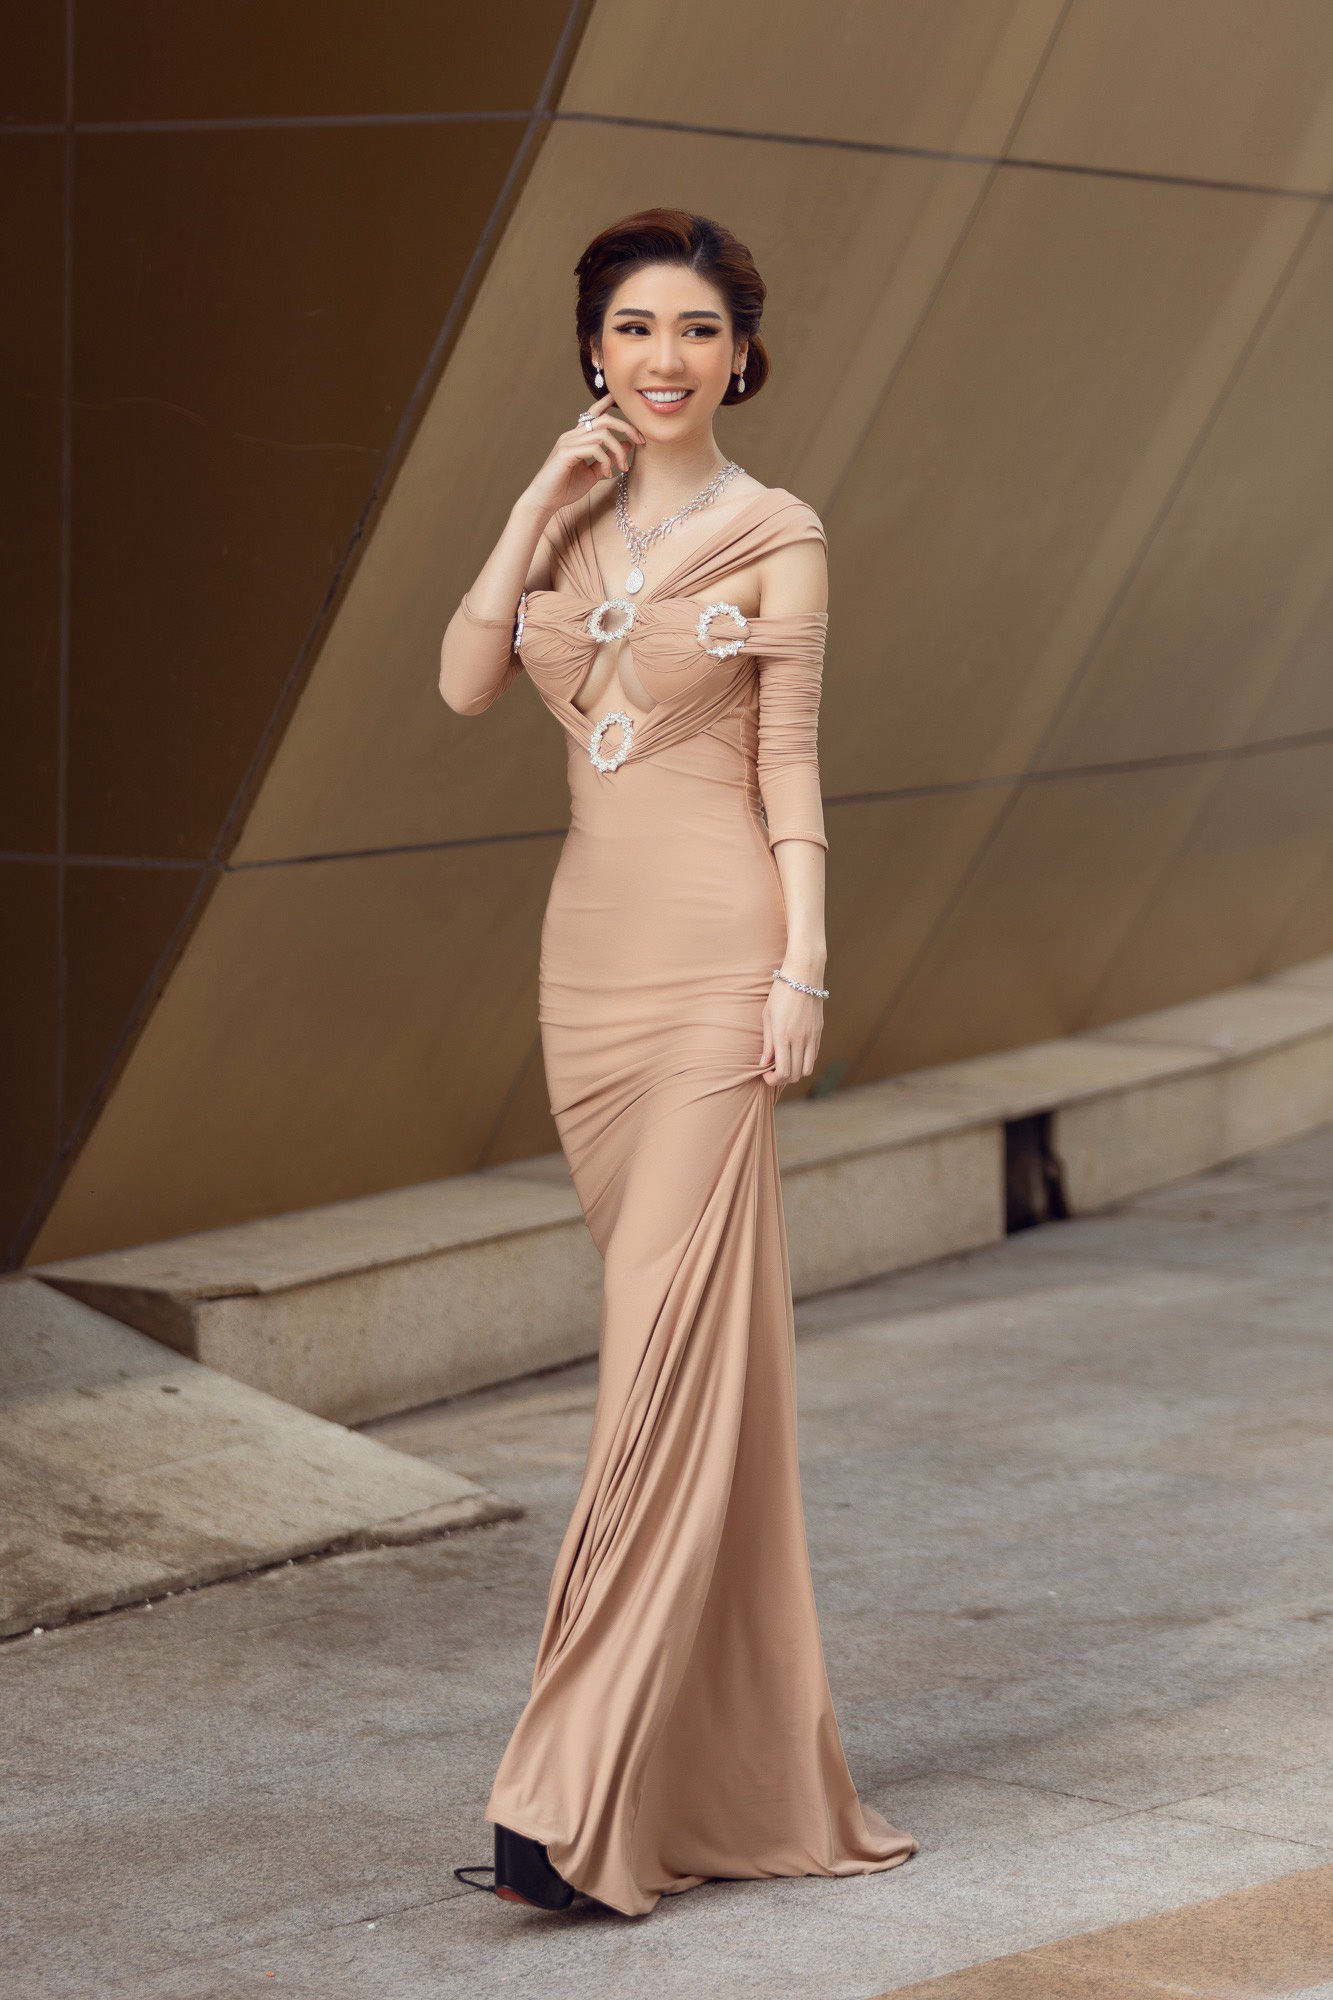 CEO Lâm Ngân diện đầm dạ hội, trang sức 20 tỷ tại họp báo chung kết Hoa hậu Việt Nam 2020 - Ảnh 2.